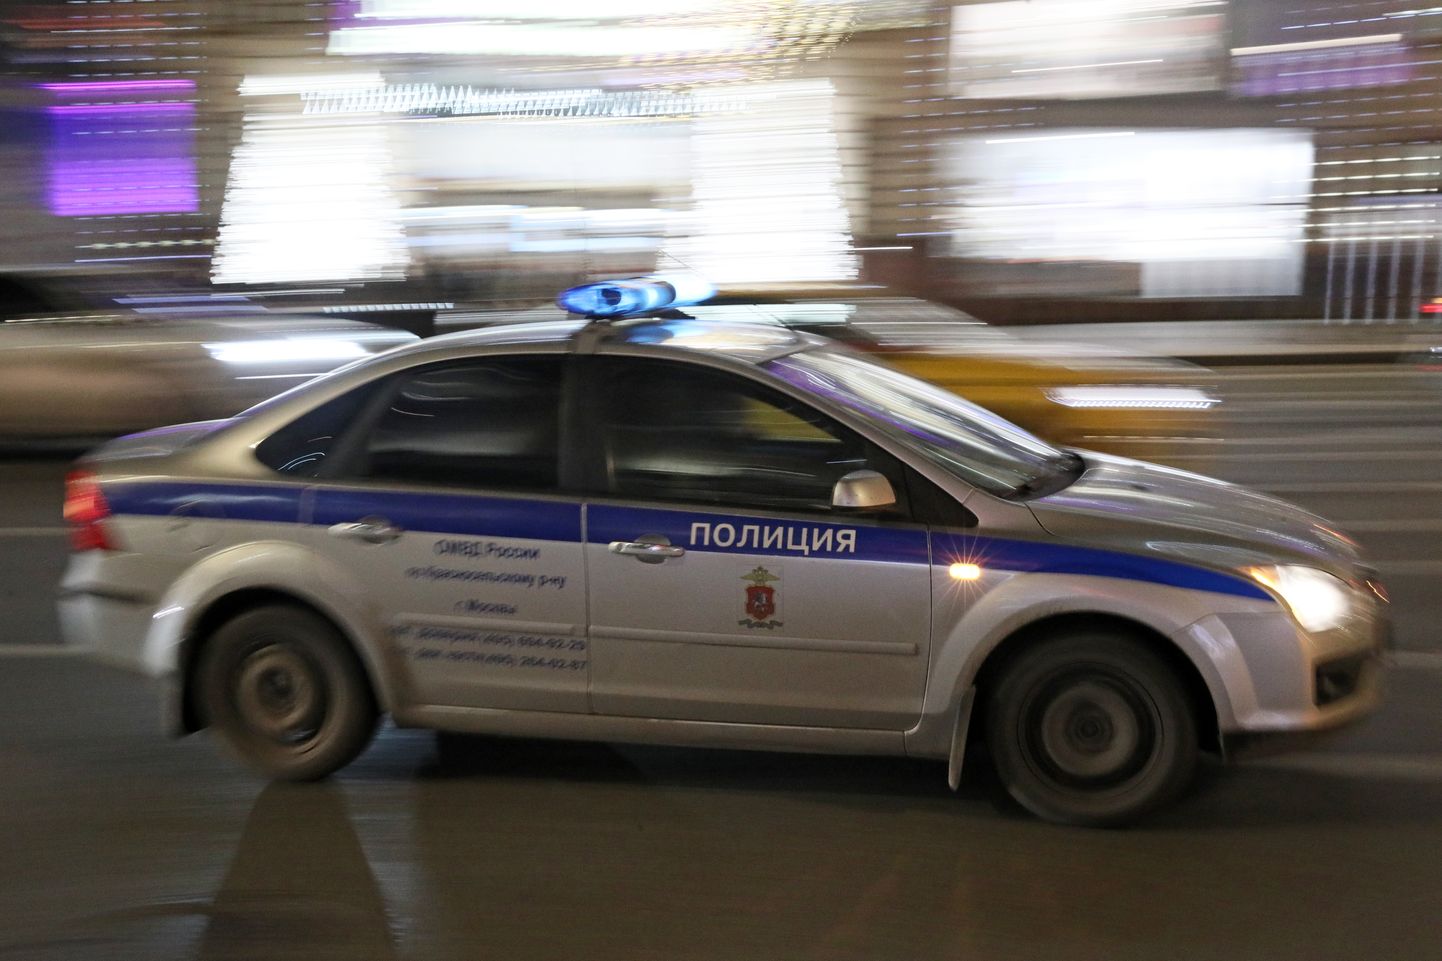 Vene politseiauto.